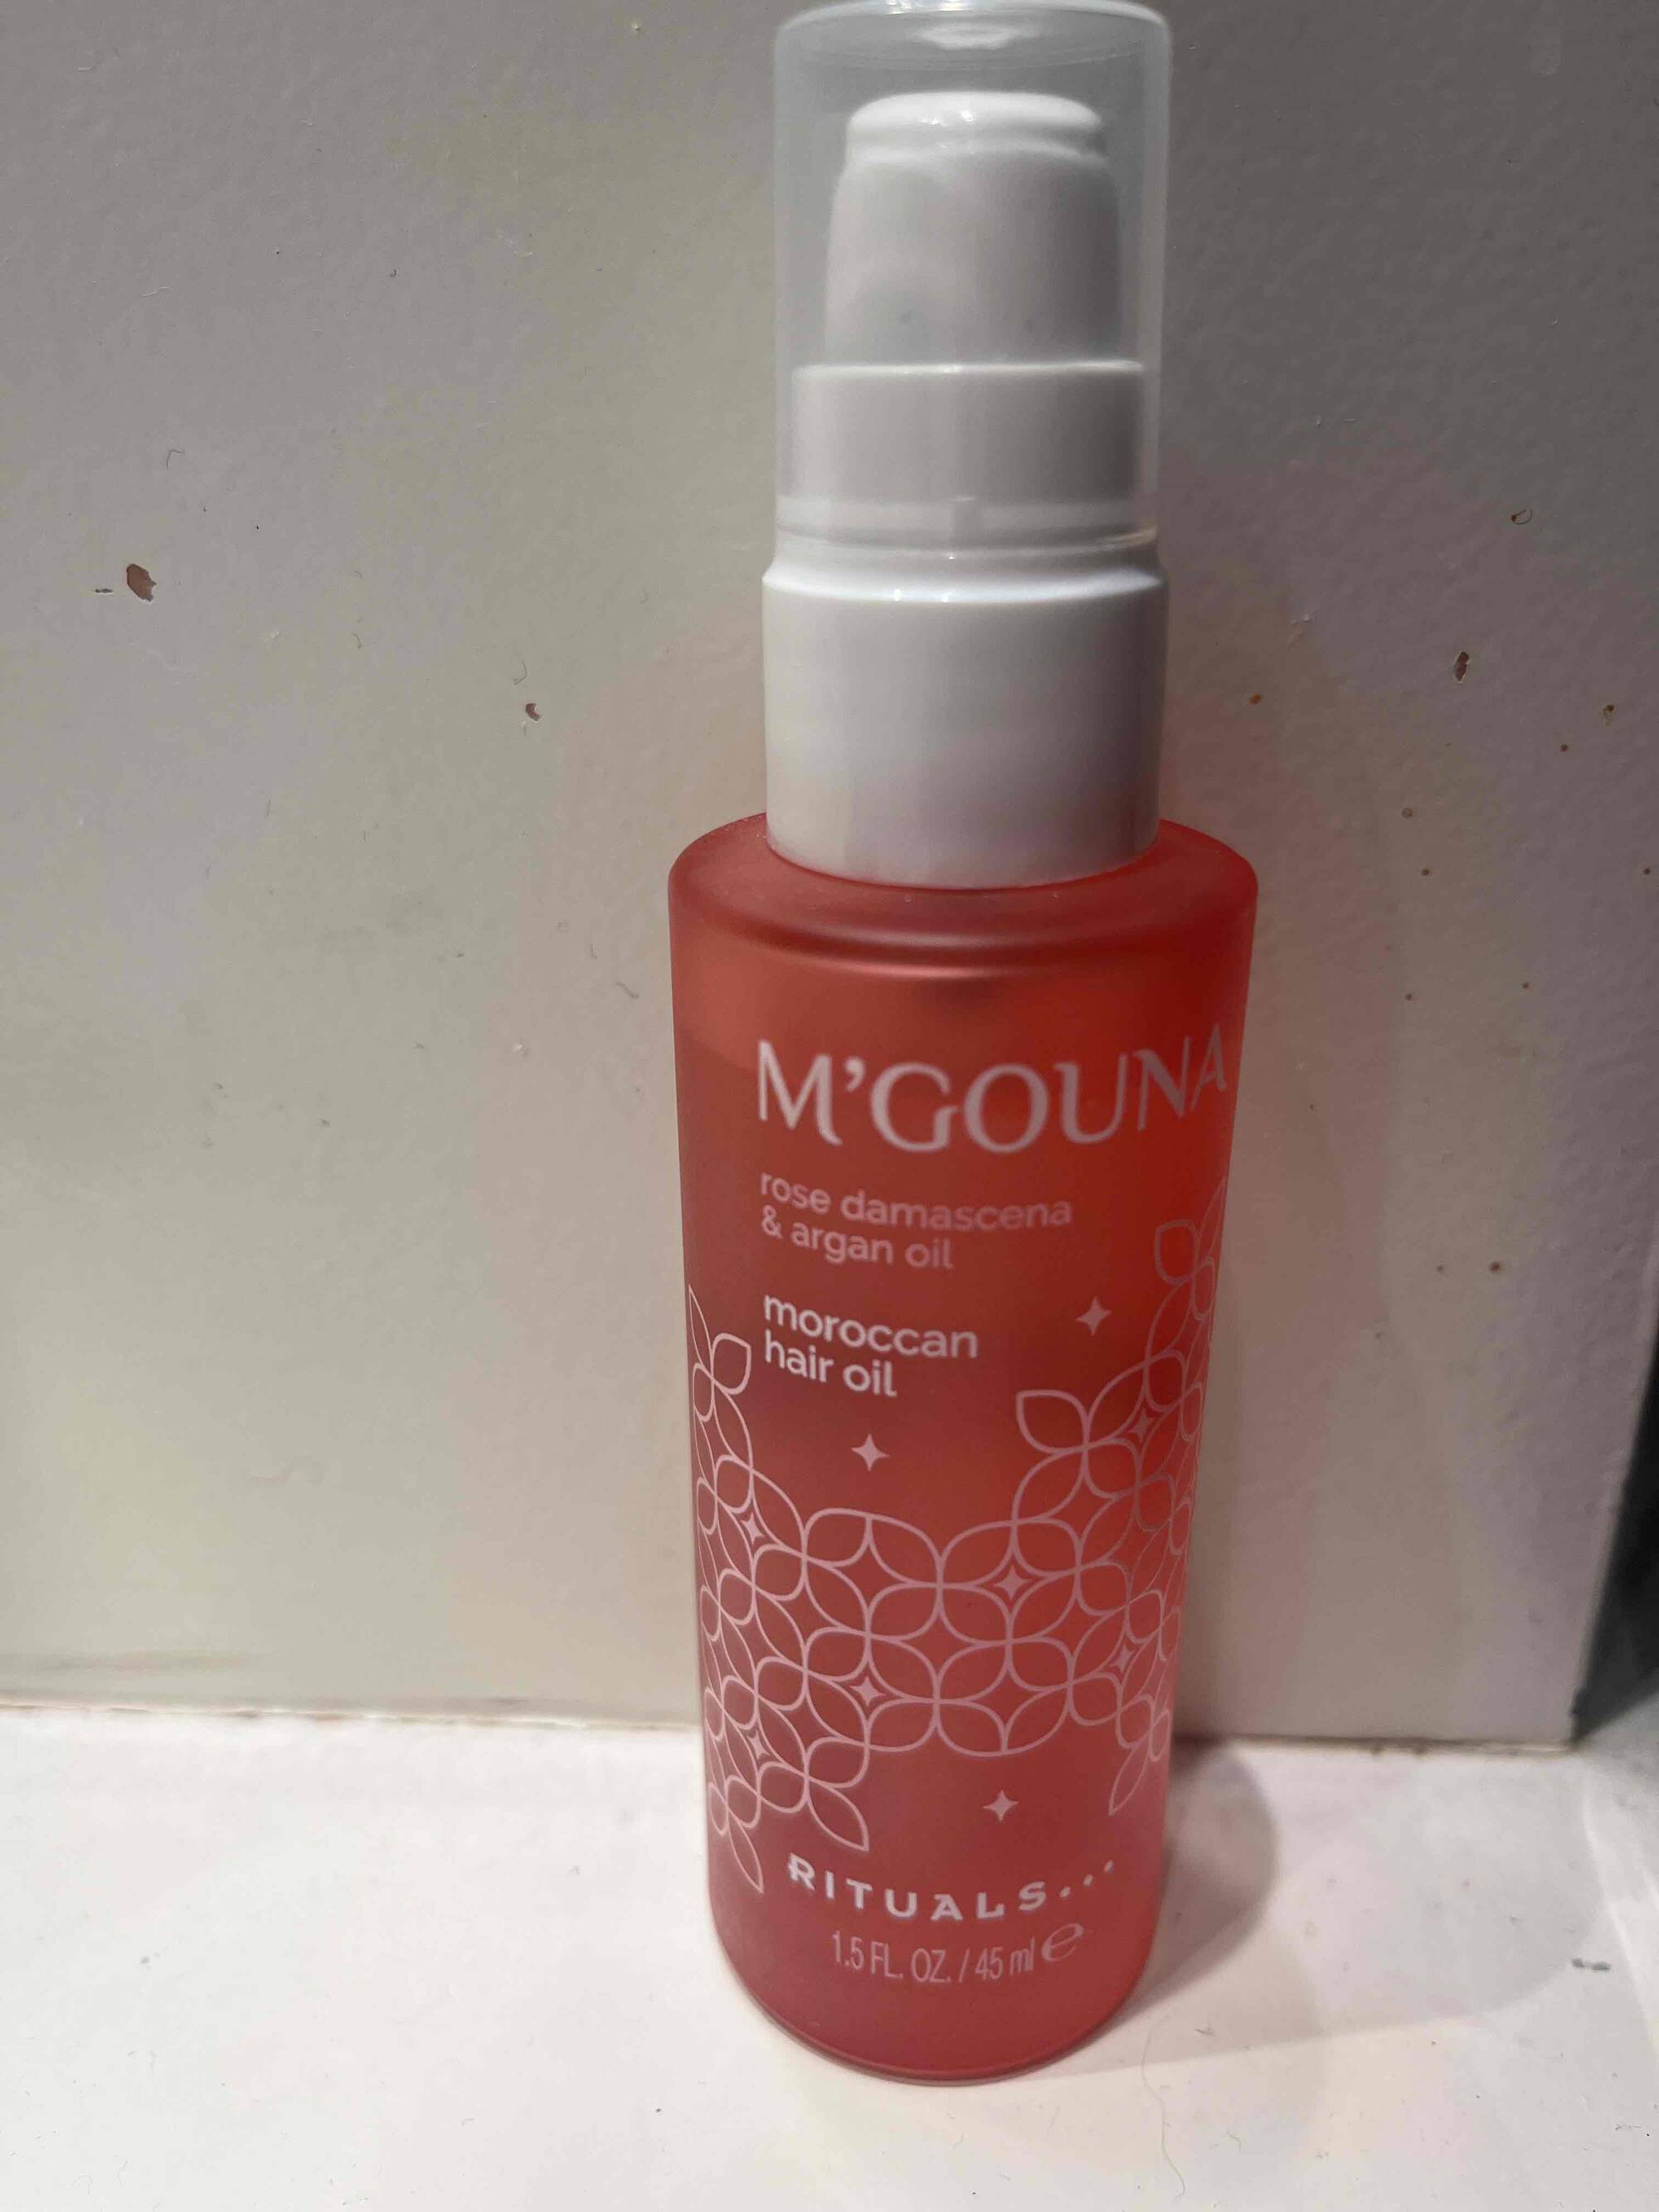 RITUALS - M’gouna - Moroccan hair oil